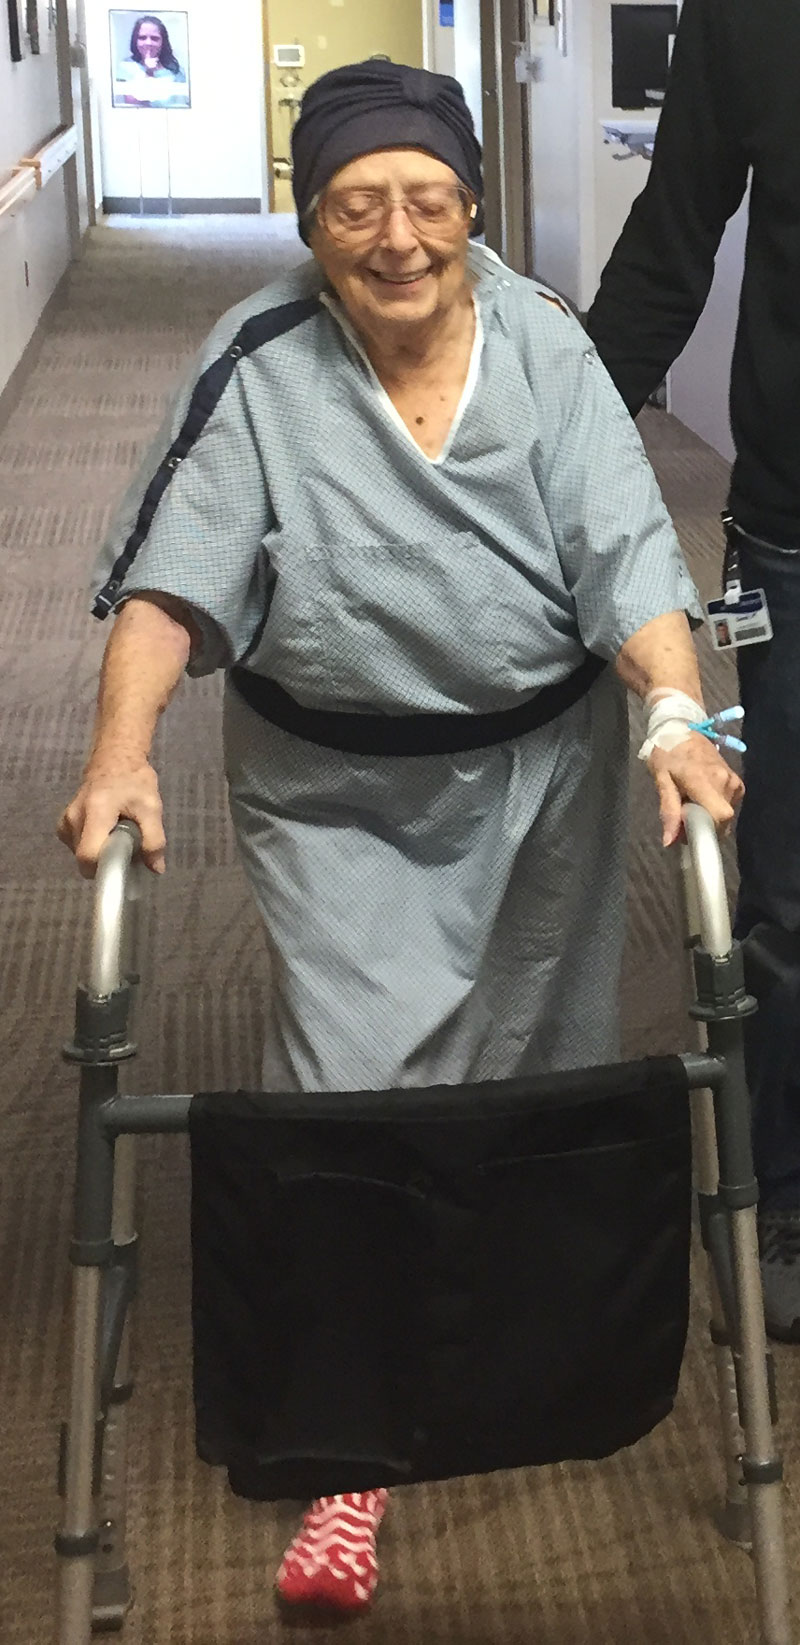 Dorothy Noorlander in the Mt. Pleasant Hospital